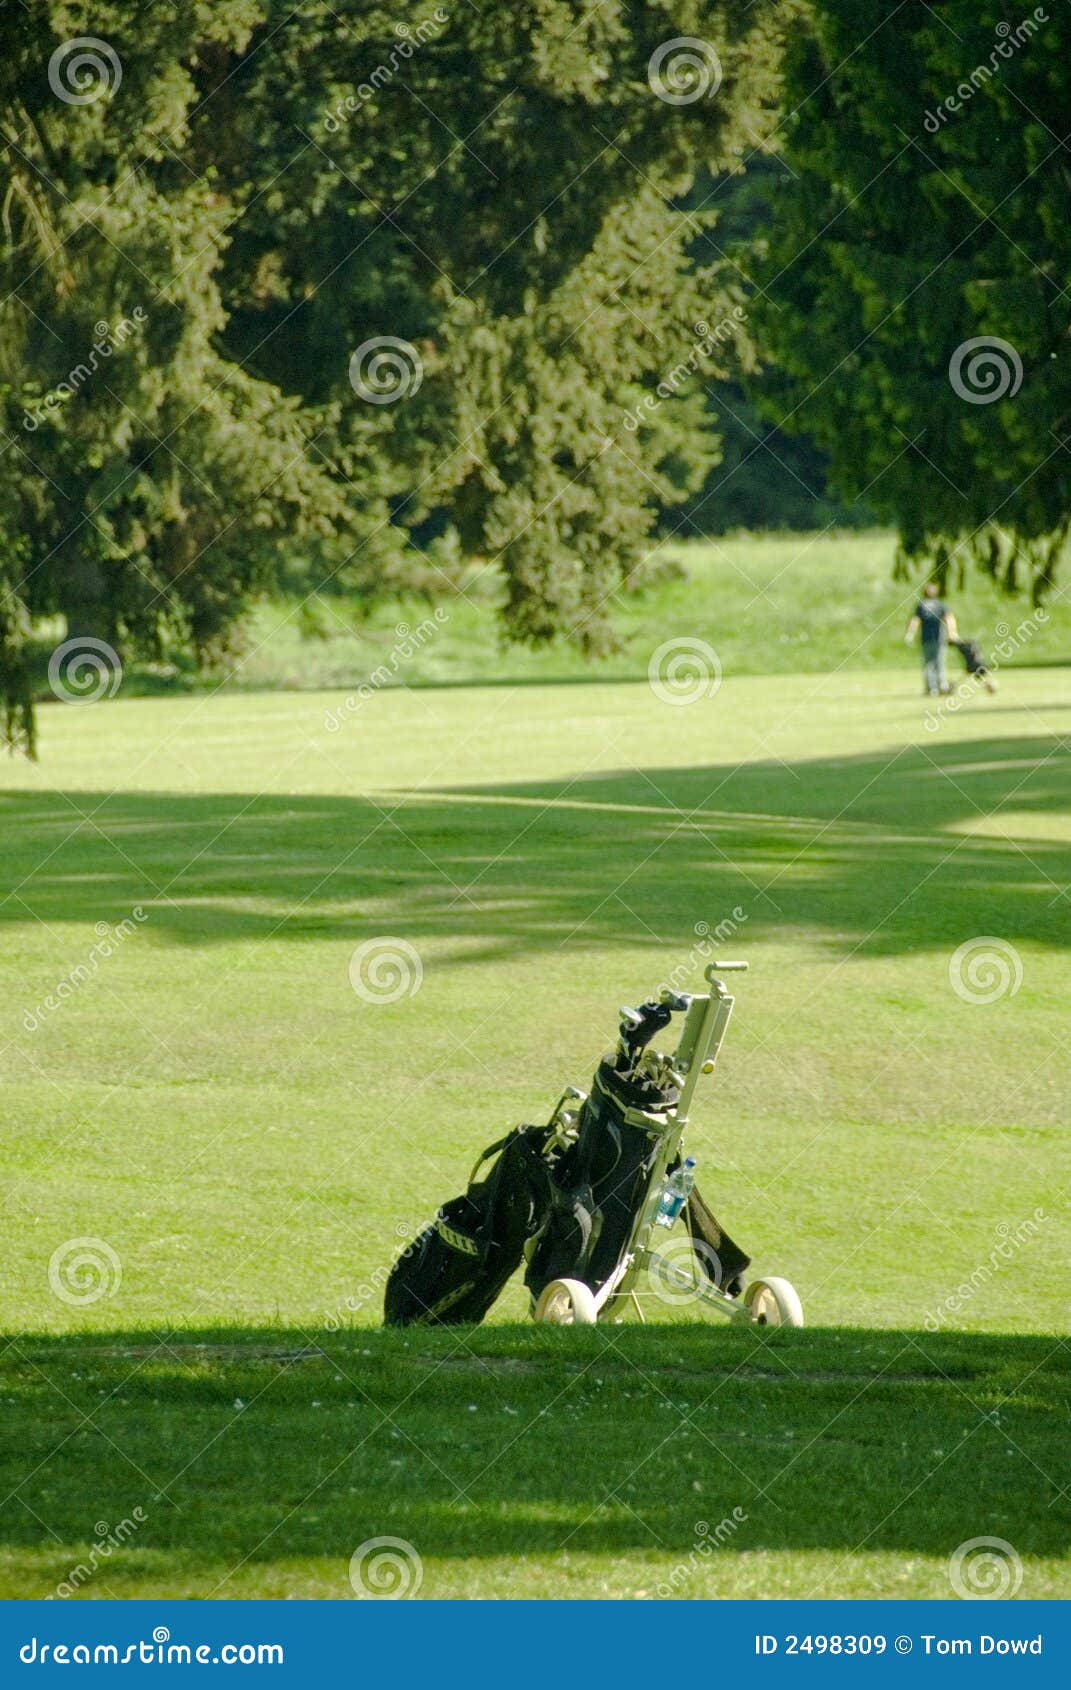 golf bag waits on green fairway